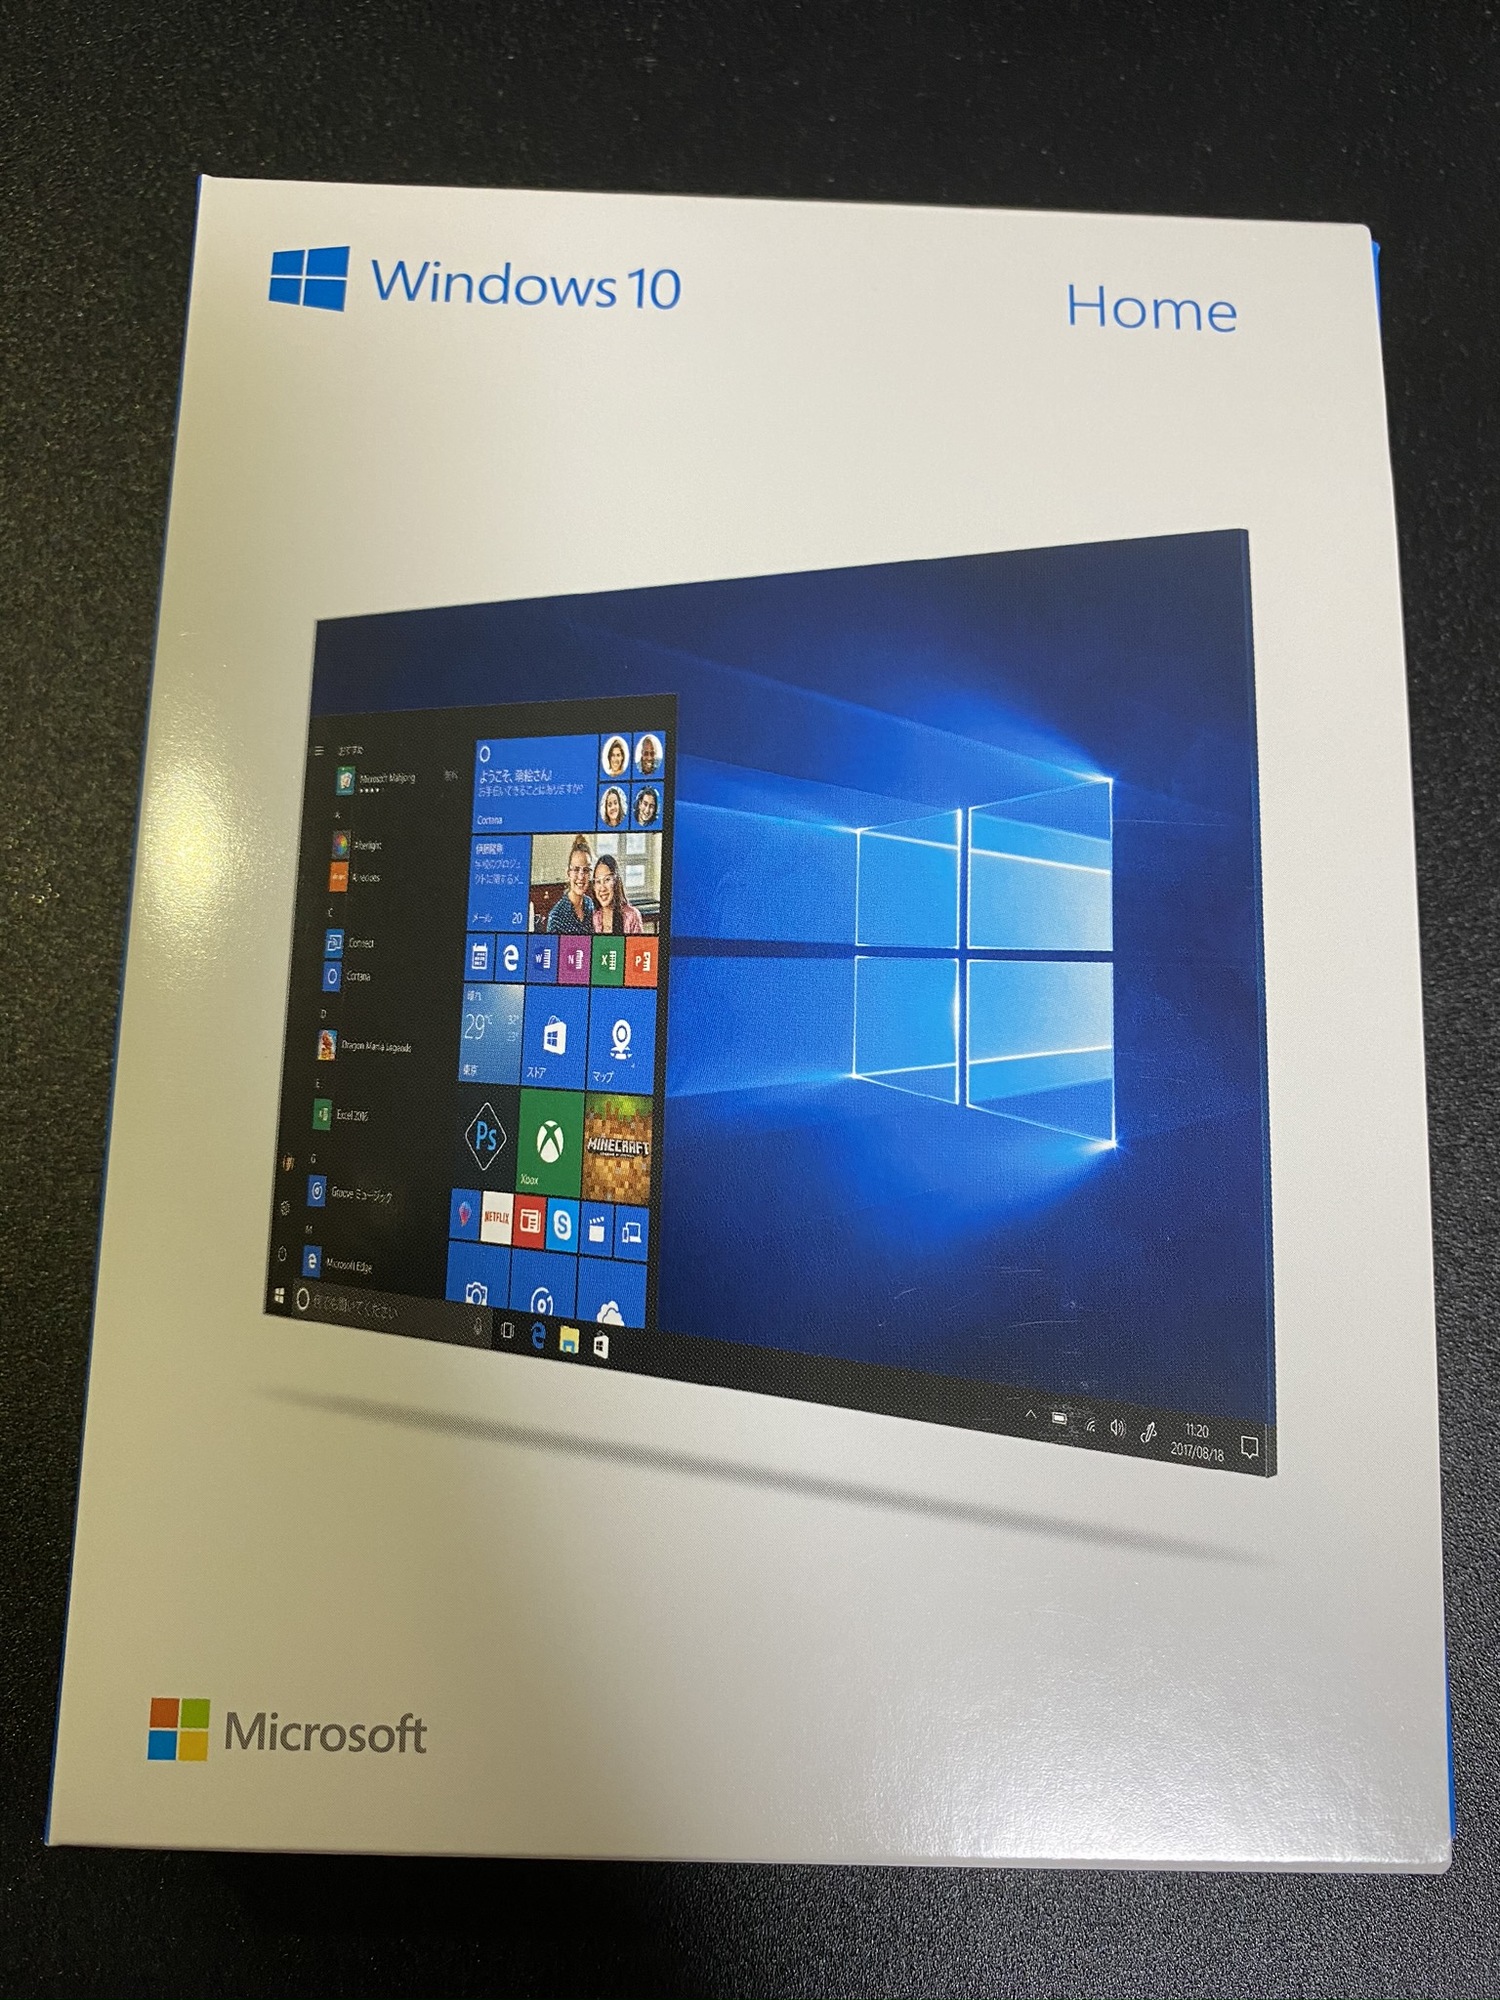 Windows 10 Home d85fdf2c-2b4f-49be-baf7-bb8e132e2f78?upload=true.jpg